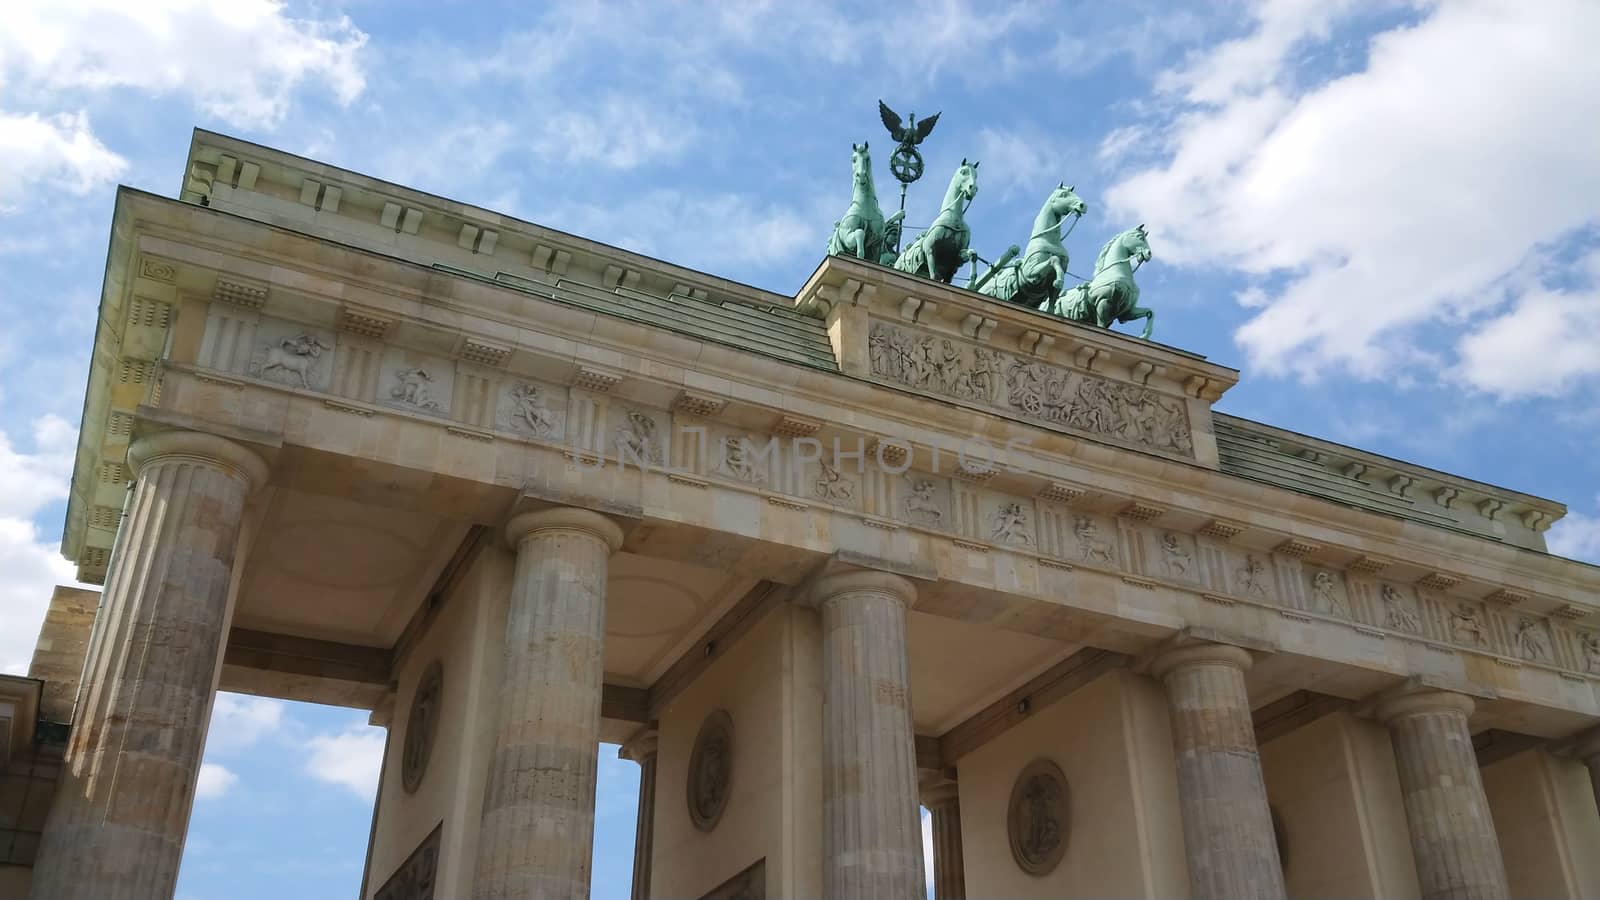 Famous landmark in Berlin - The Brandenburg Gate called Brandenburger Tor